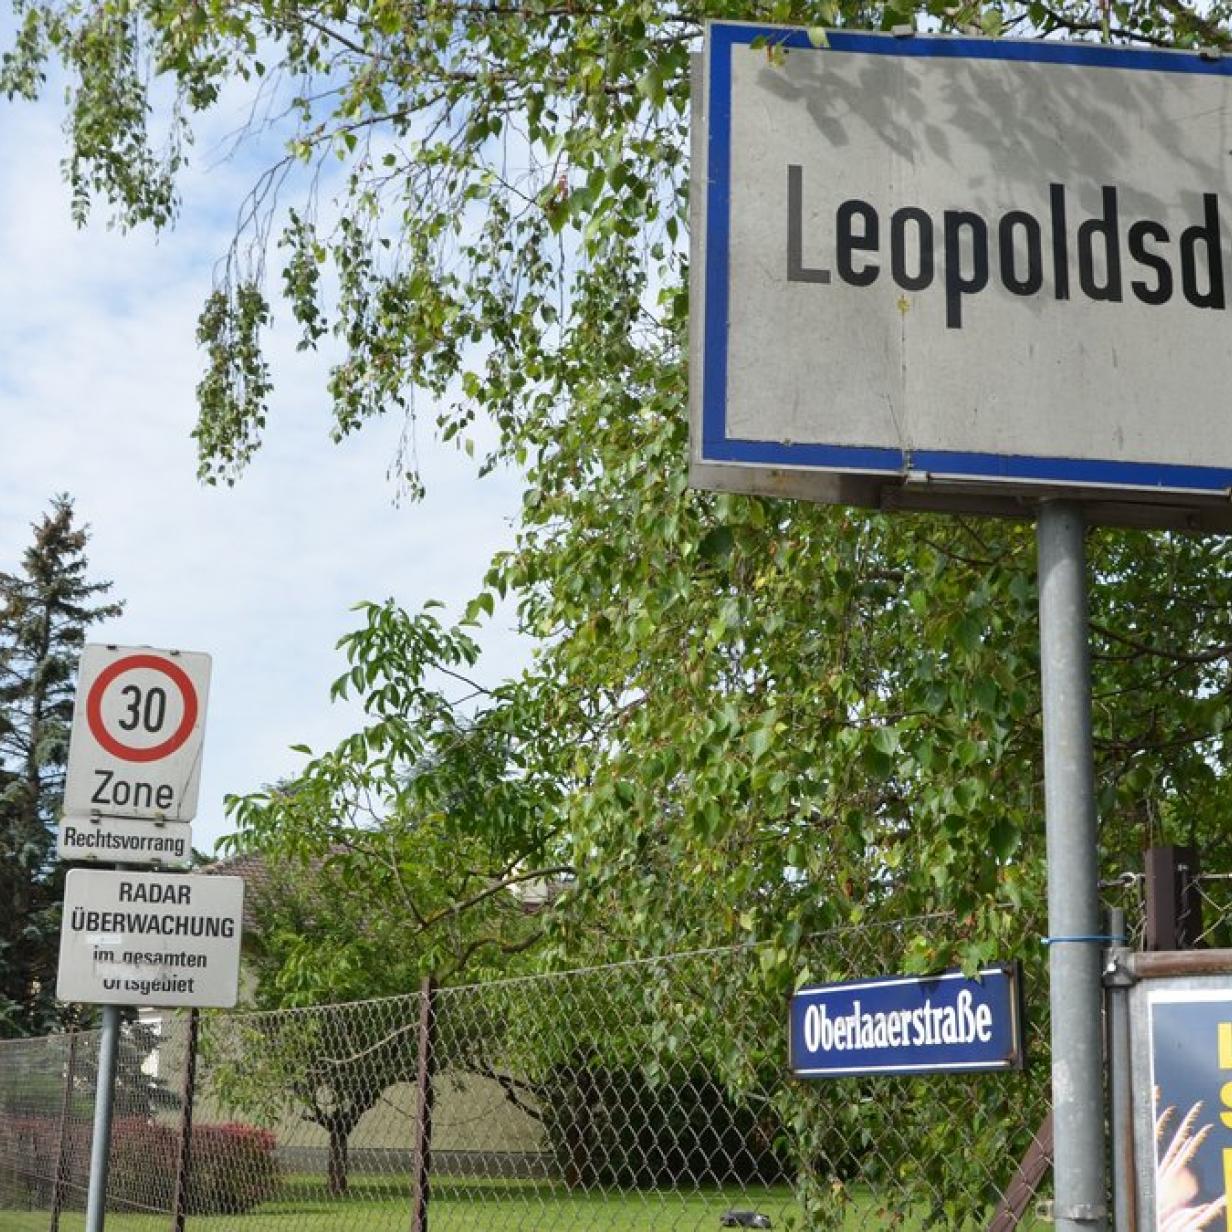 Leopoldsdorf reiche mnner kennenlernen - Sex kontakte 